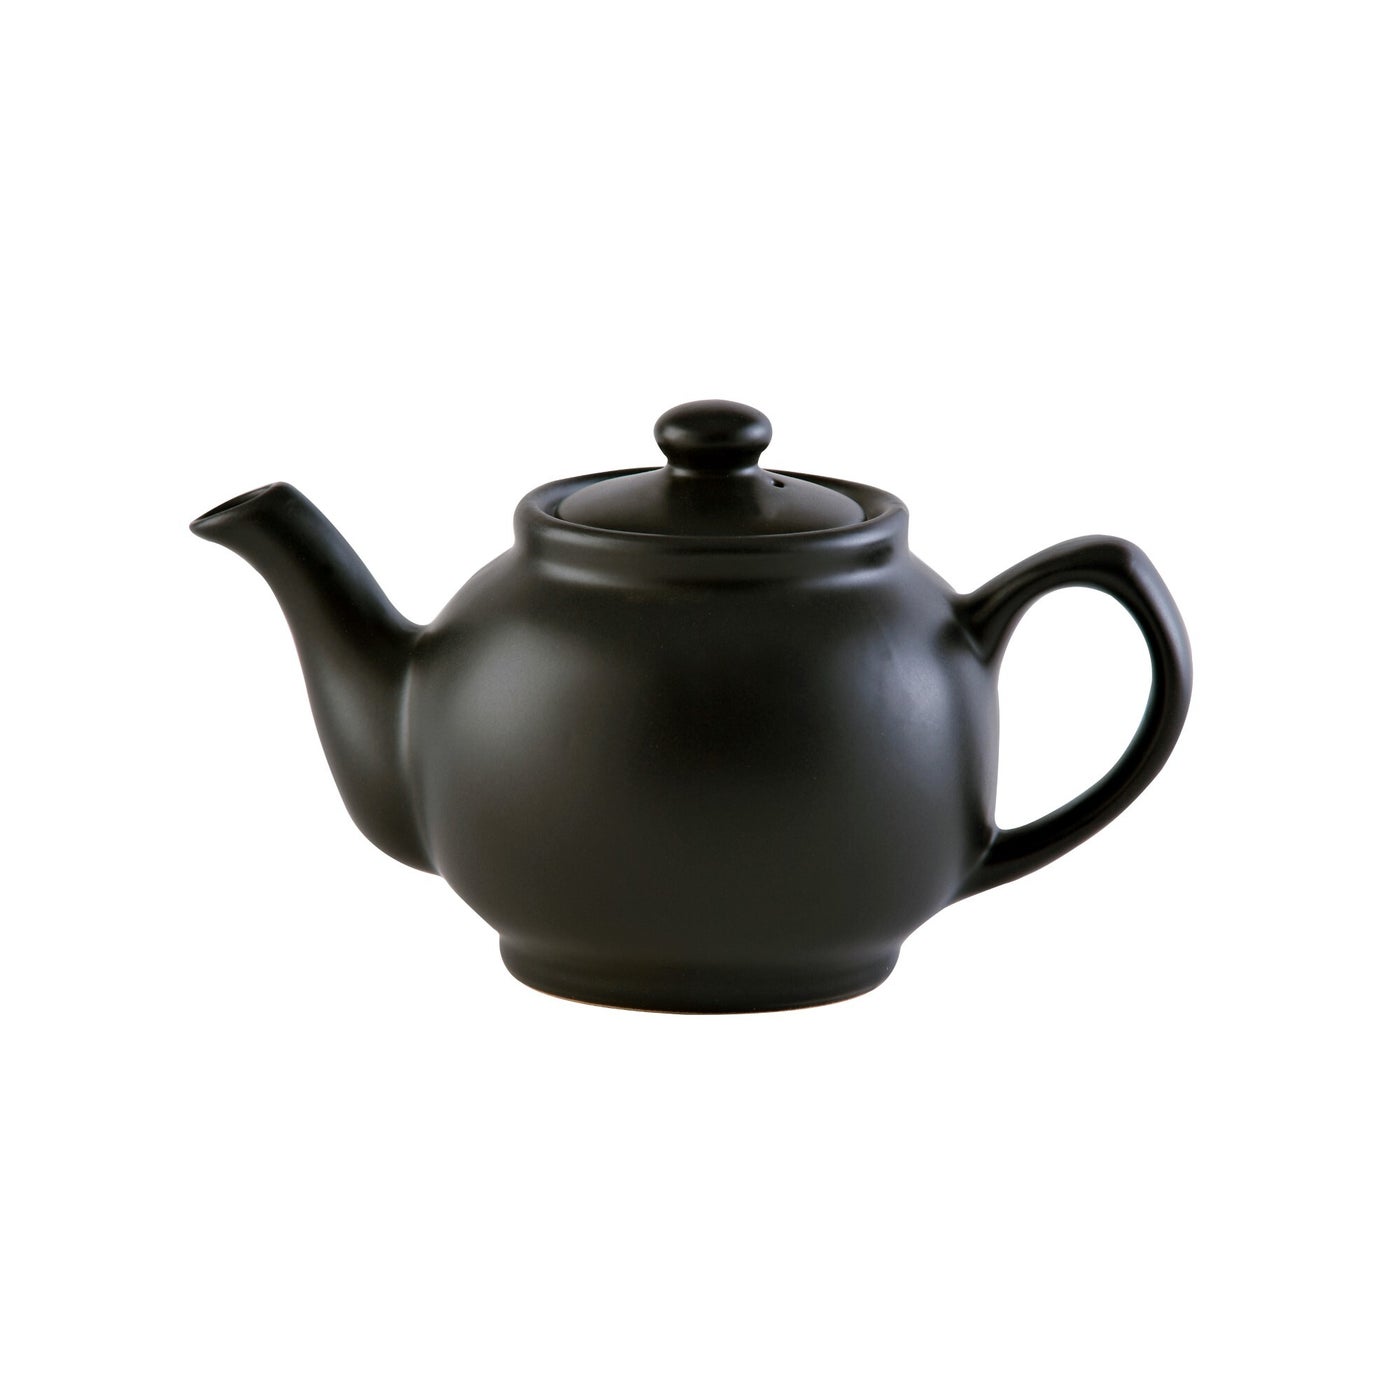 PRICE & KENSINGTON MATTE Teapot 6 cup - KitchenEnvy